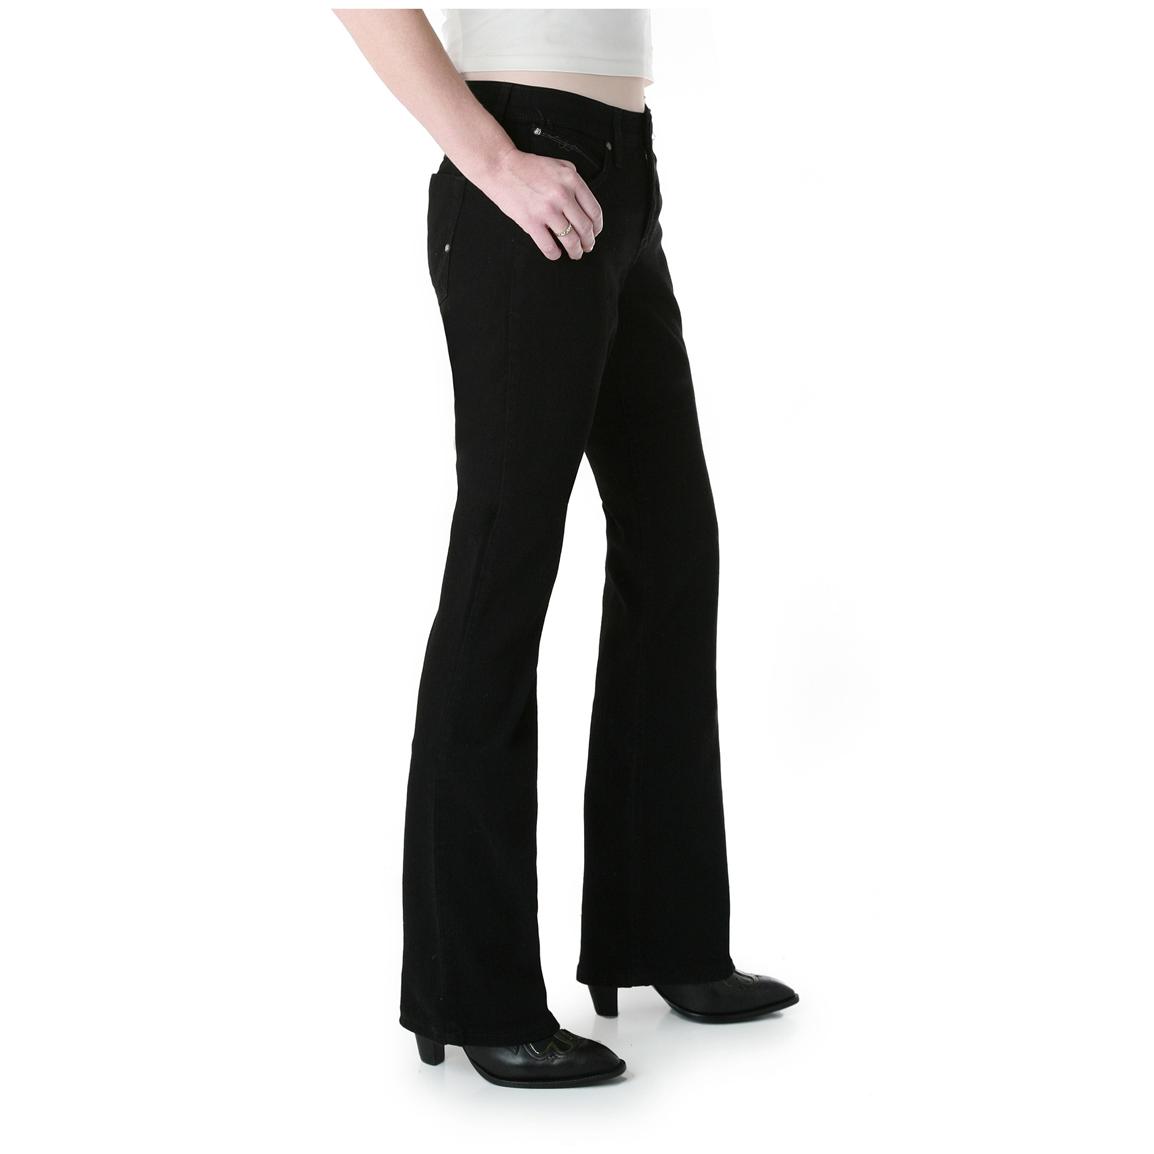 White Sierra Womens Microtek Fleece Pants 31 Inseam Black 657814